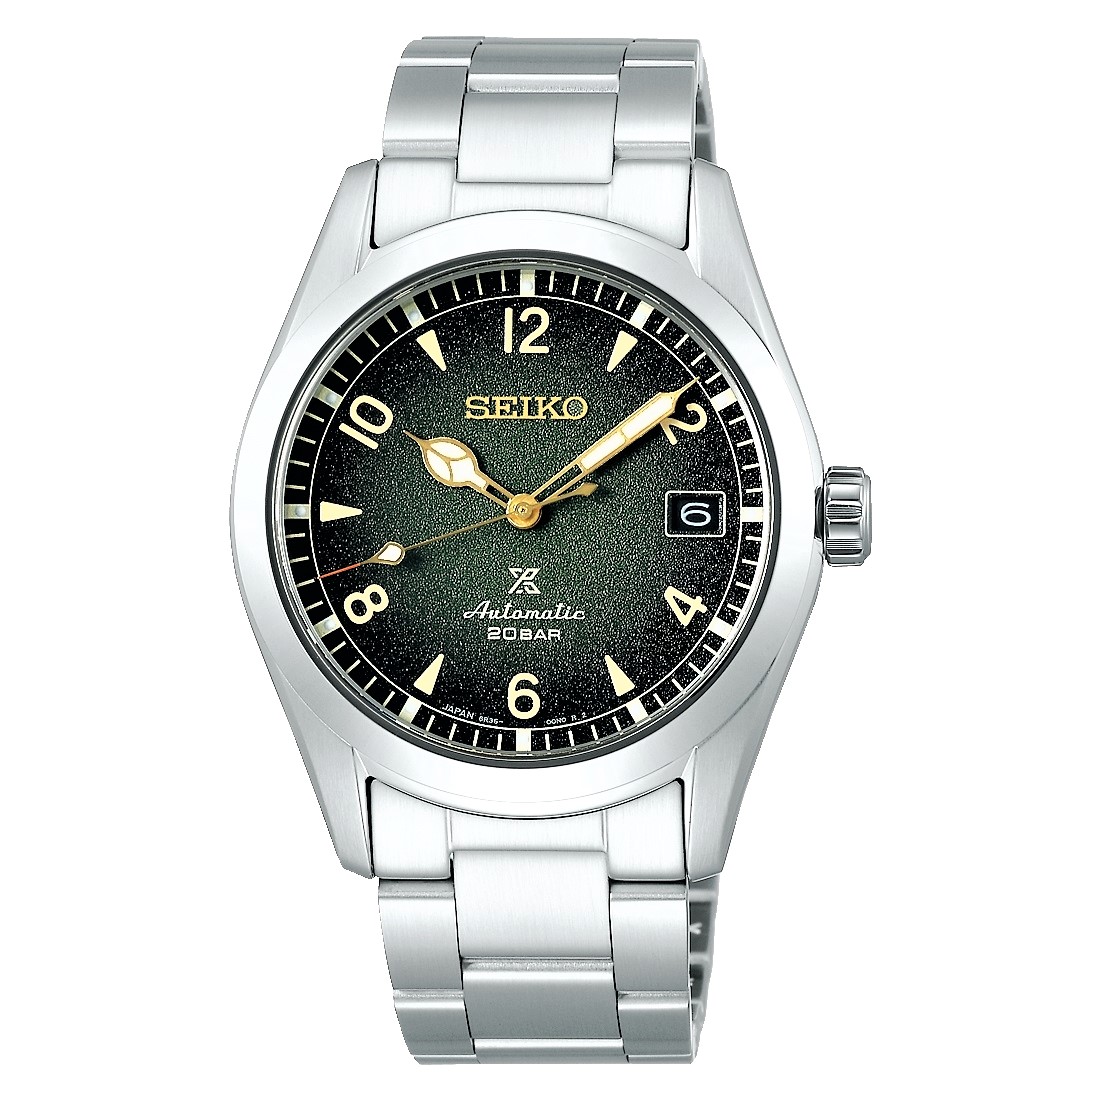 セイコープロスペックスシリーズ アルピニストsbdc115 - 腕時計(アナログ)